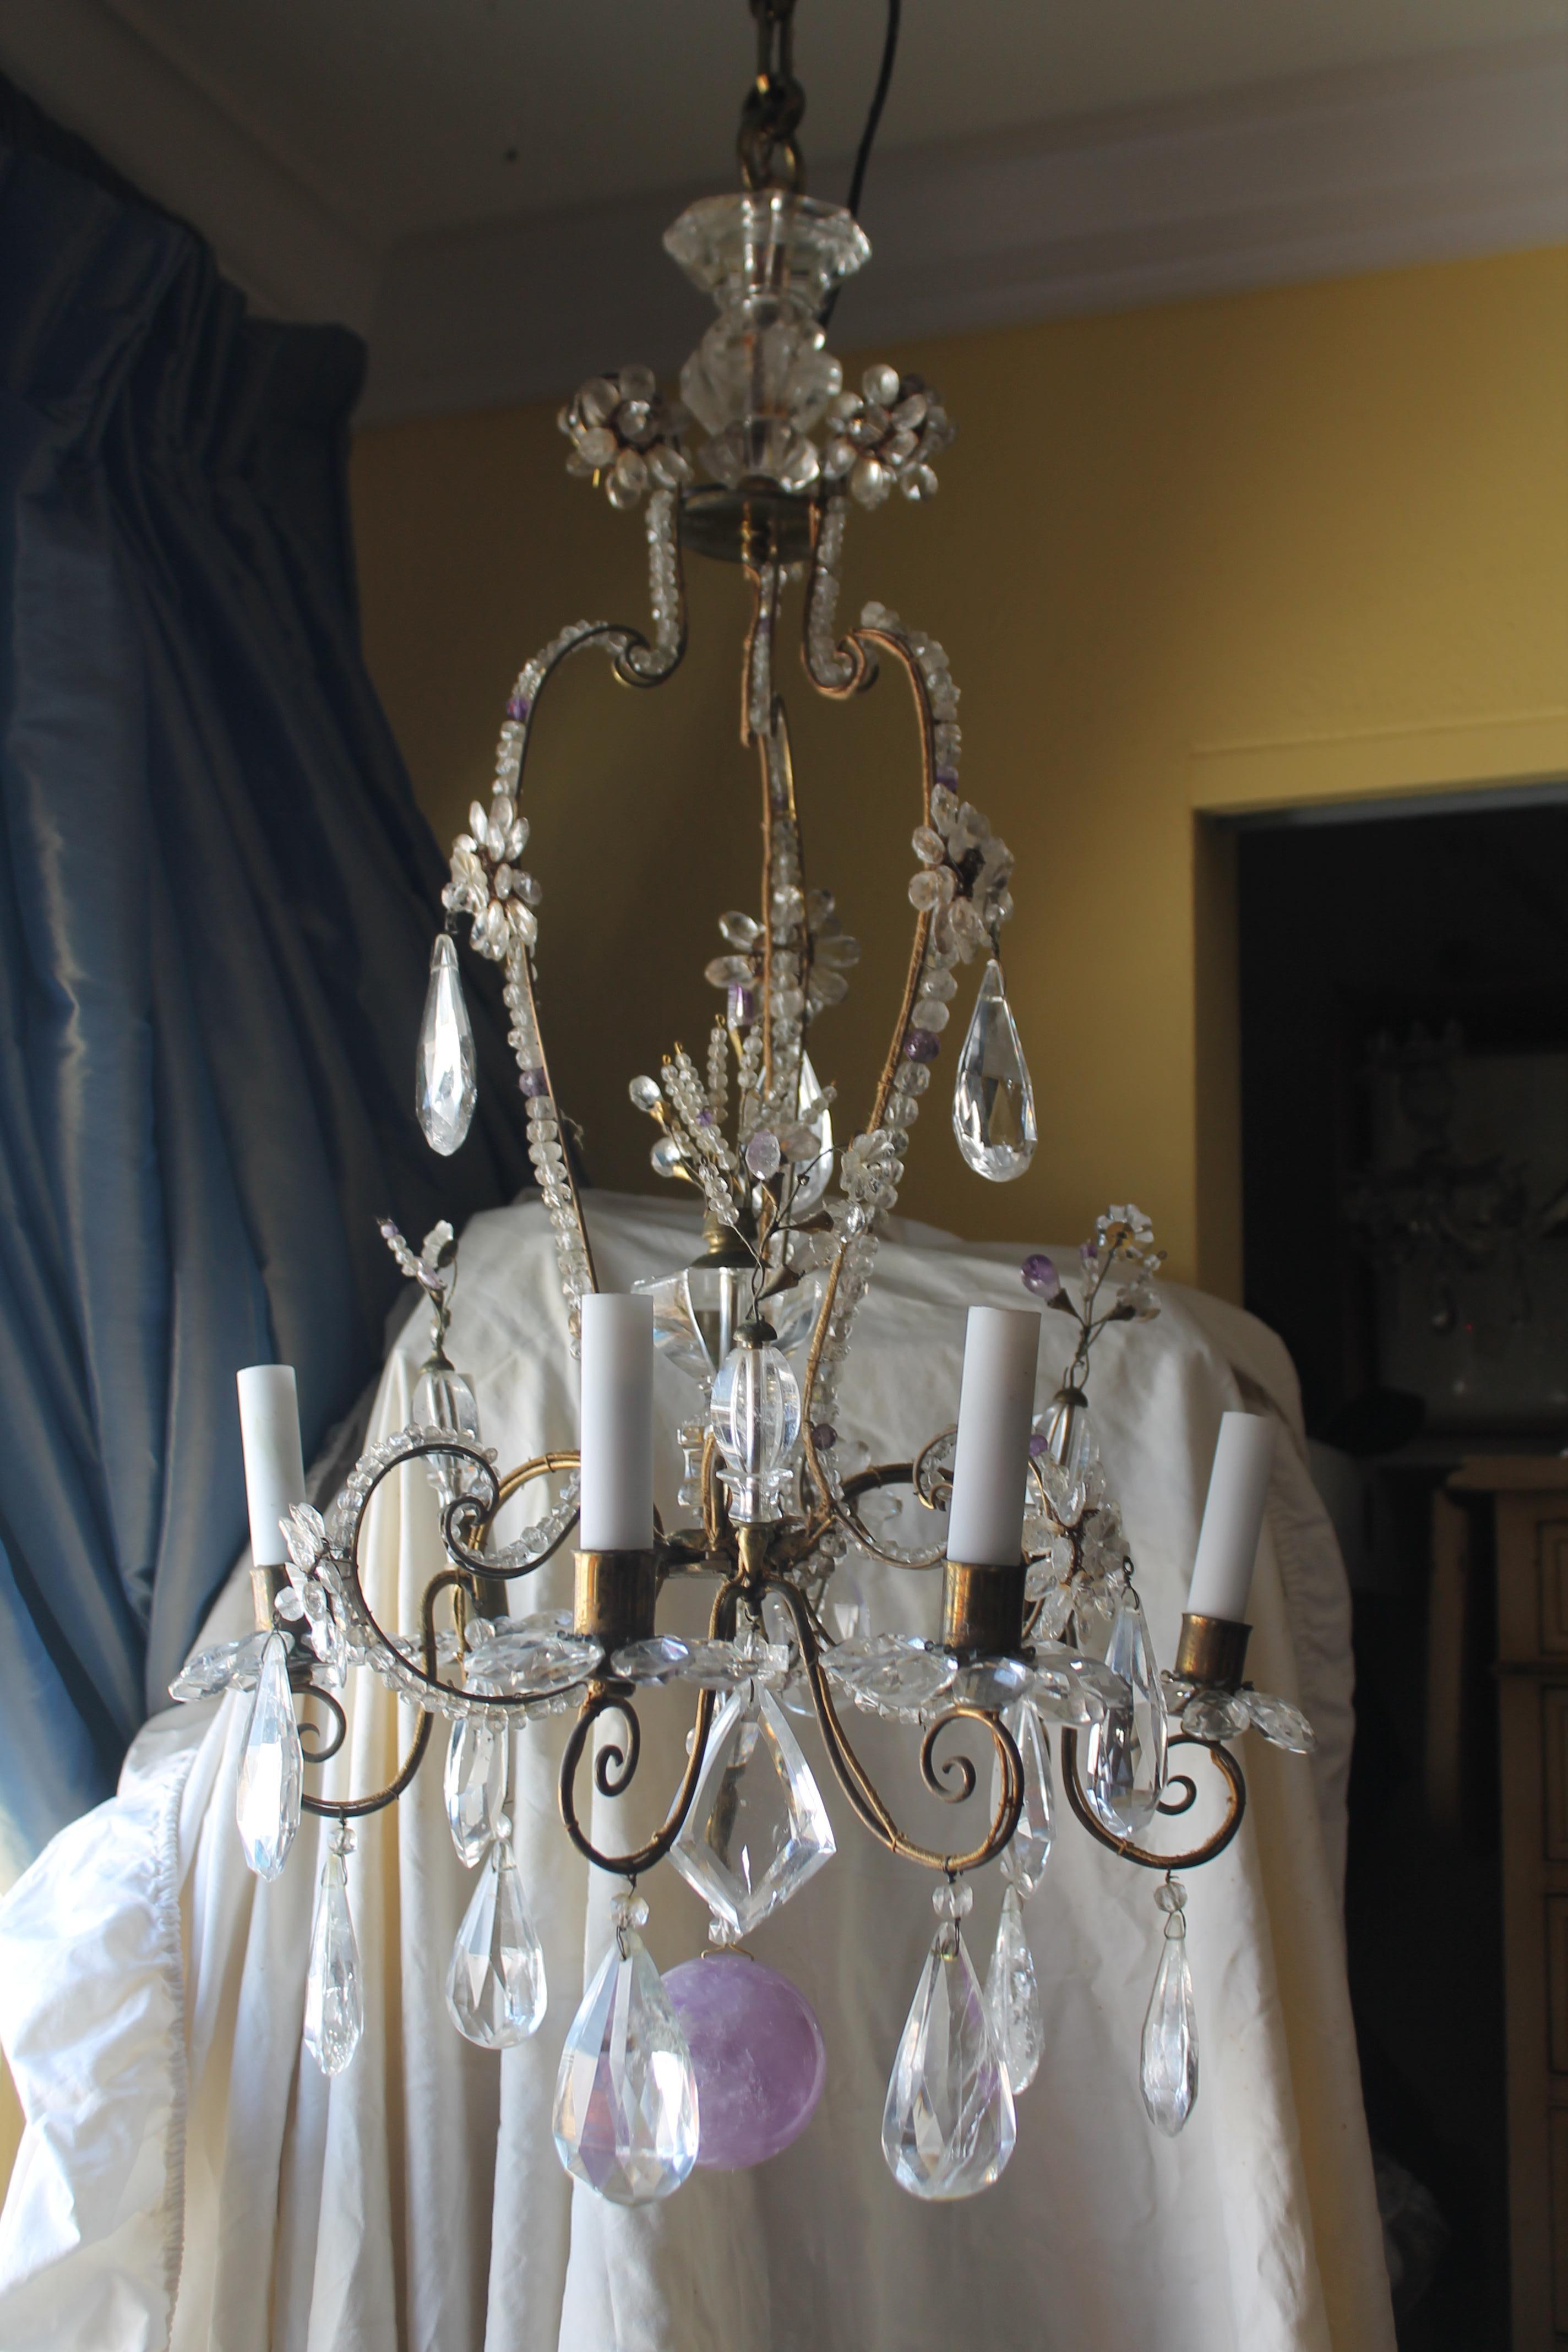 Lustre de forme lanterne en bronze et cristal de roche de style Louis XVI du 19ème siècle par la Maison Bagues. Accents de cristal de roche améthyste. Il s'agit d'un lustre très détaillé et très orné. Il y a des lignes rococo en cristal perlé, 4